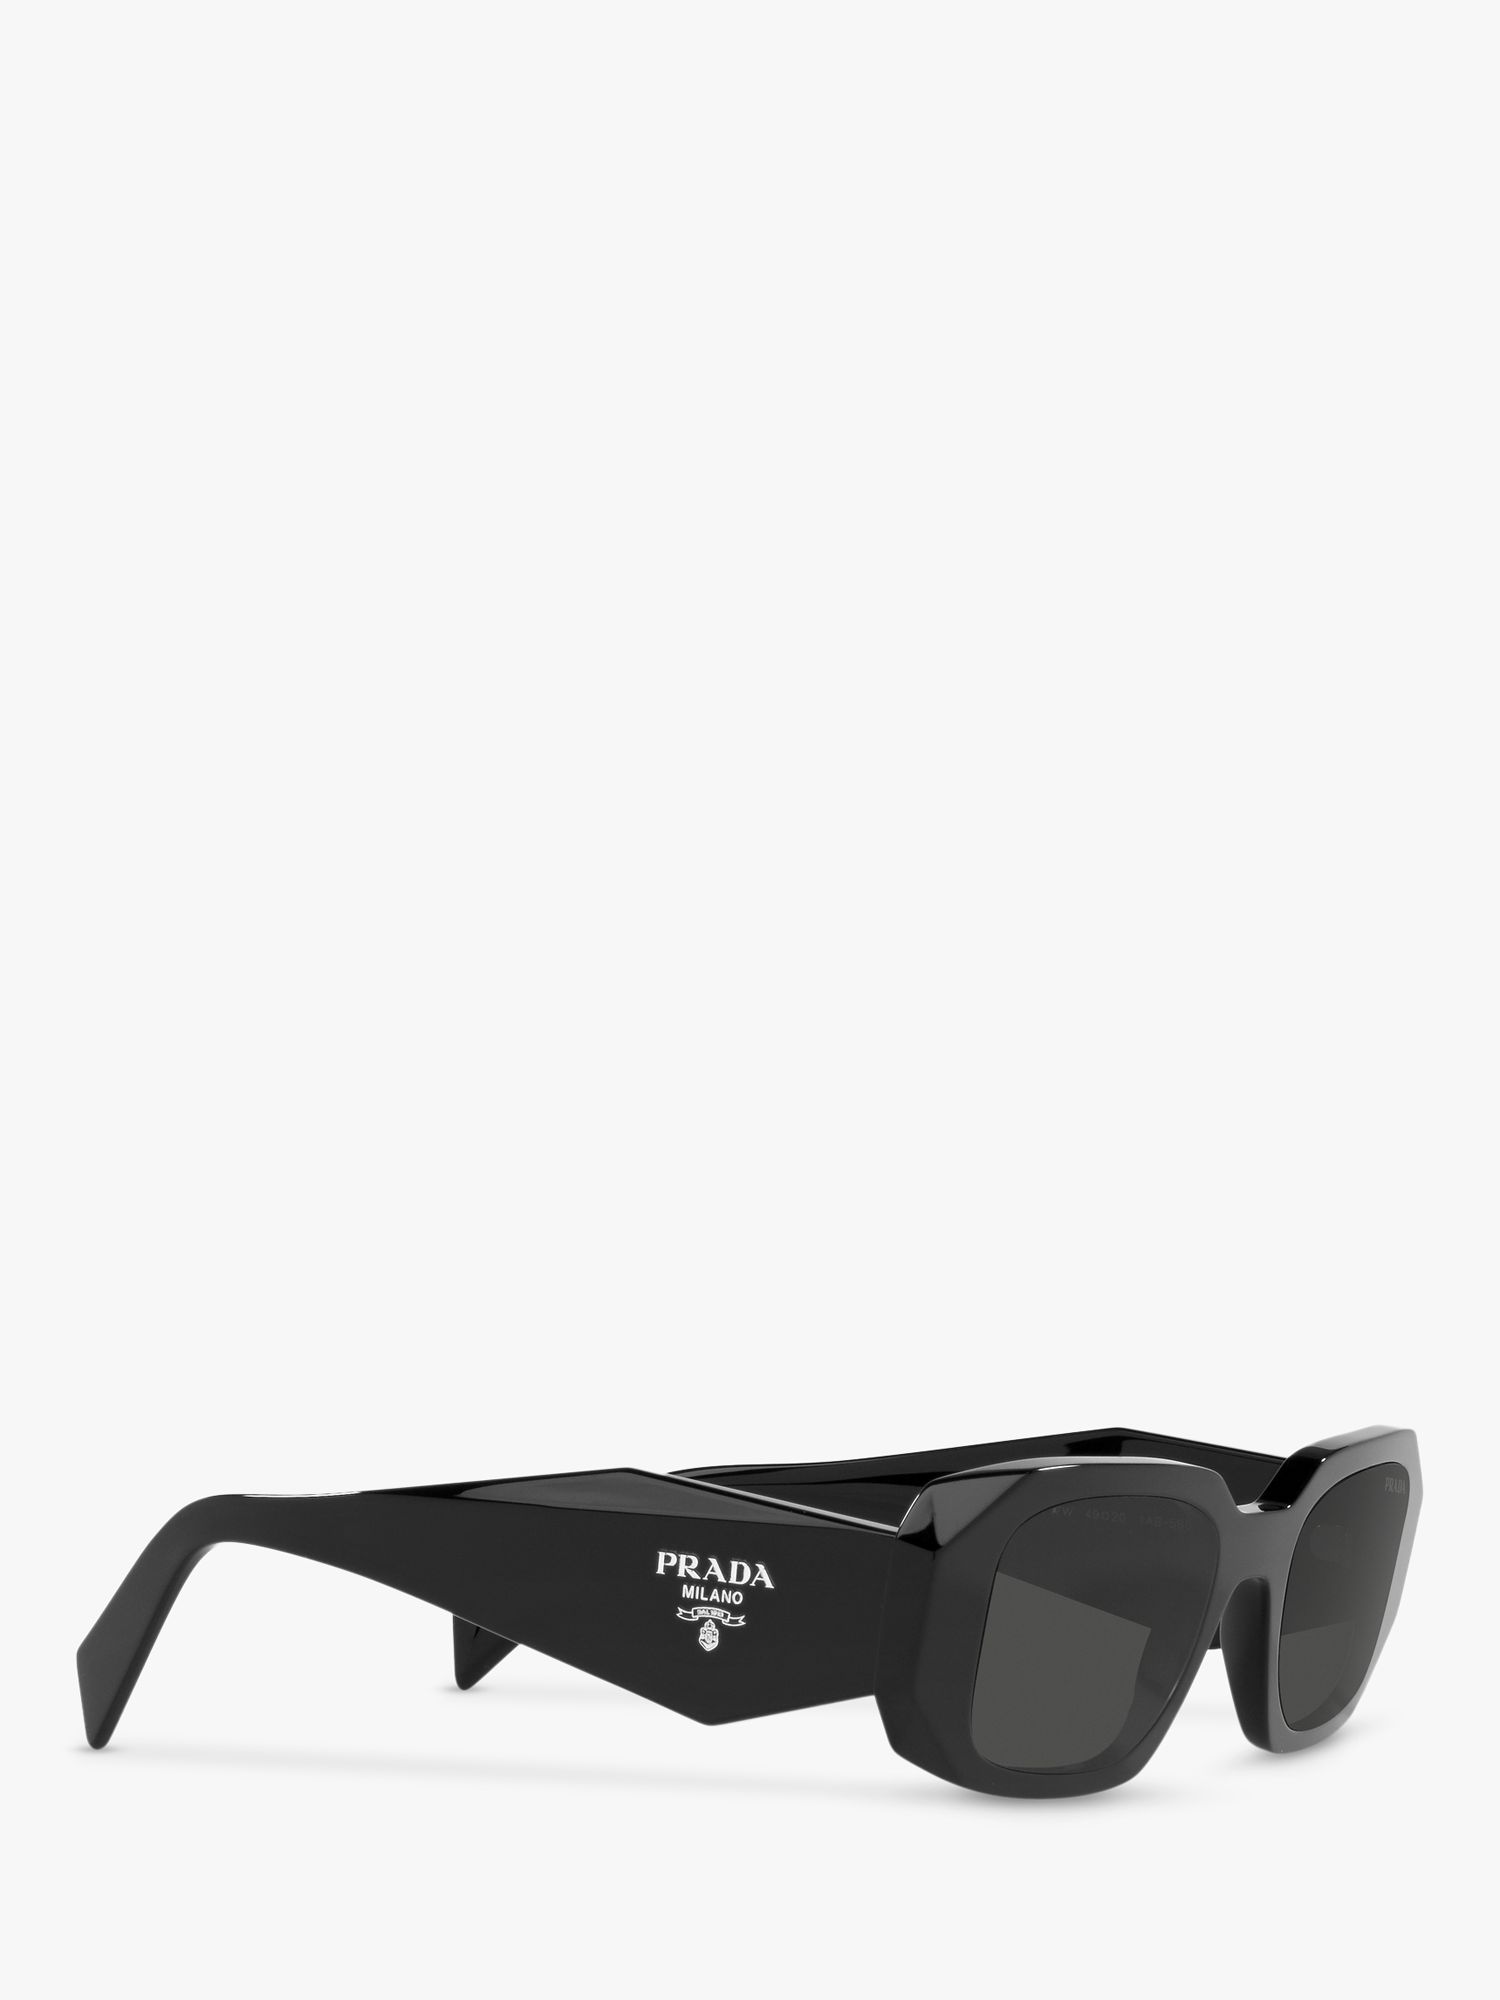 Actualizar 49+ imagen prada black square sunglasses